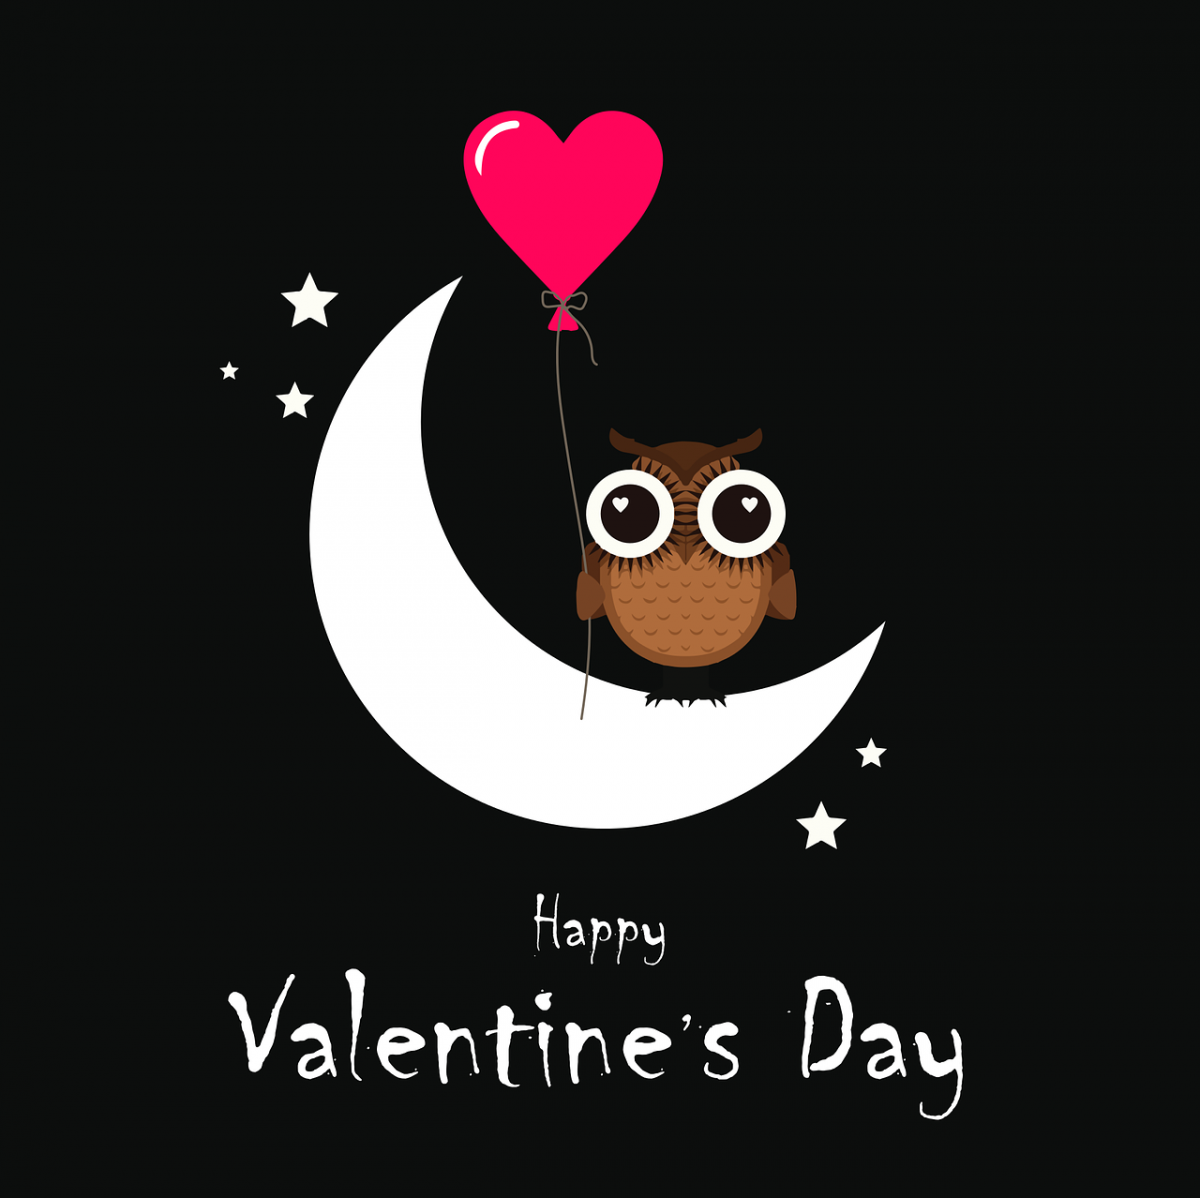 Hibou avec ballon en forme de cœur et texte "Happy Valentine's Day"